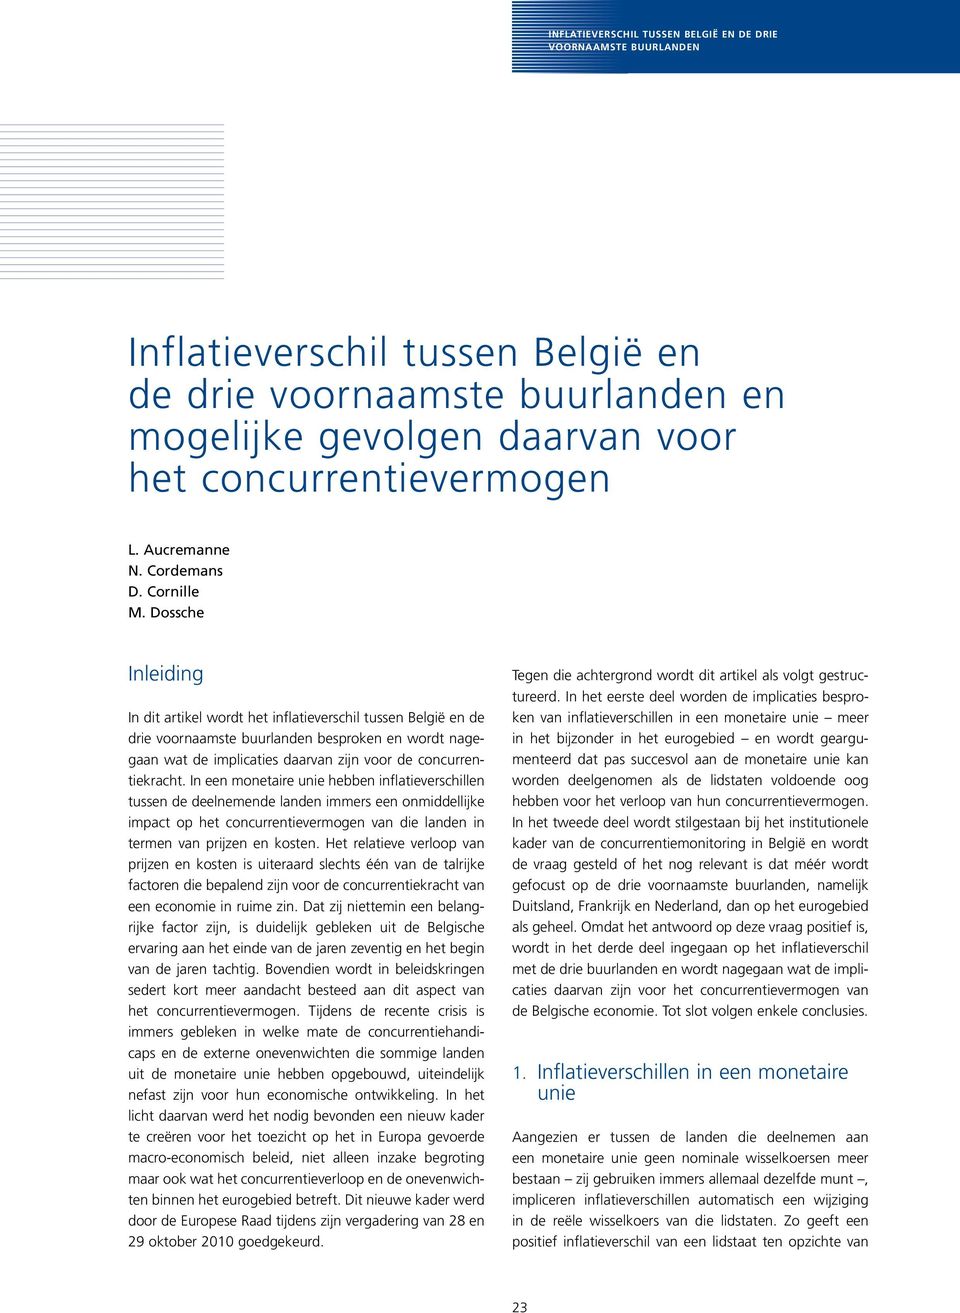 Dossche Inleiding In dit artikel wordt het inflatieverschil tussen België en de drie voornaamste buurlanden besproken en wordt nagegaan wat de implicaties daarvan zijn voor de concurrentiekracht.